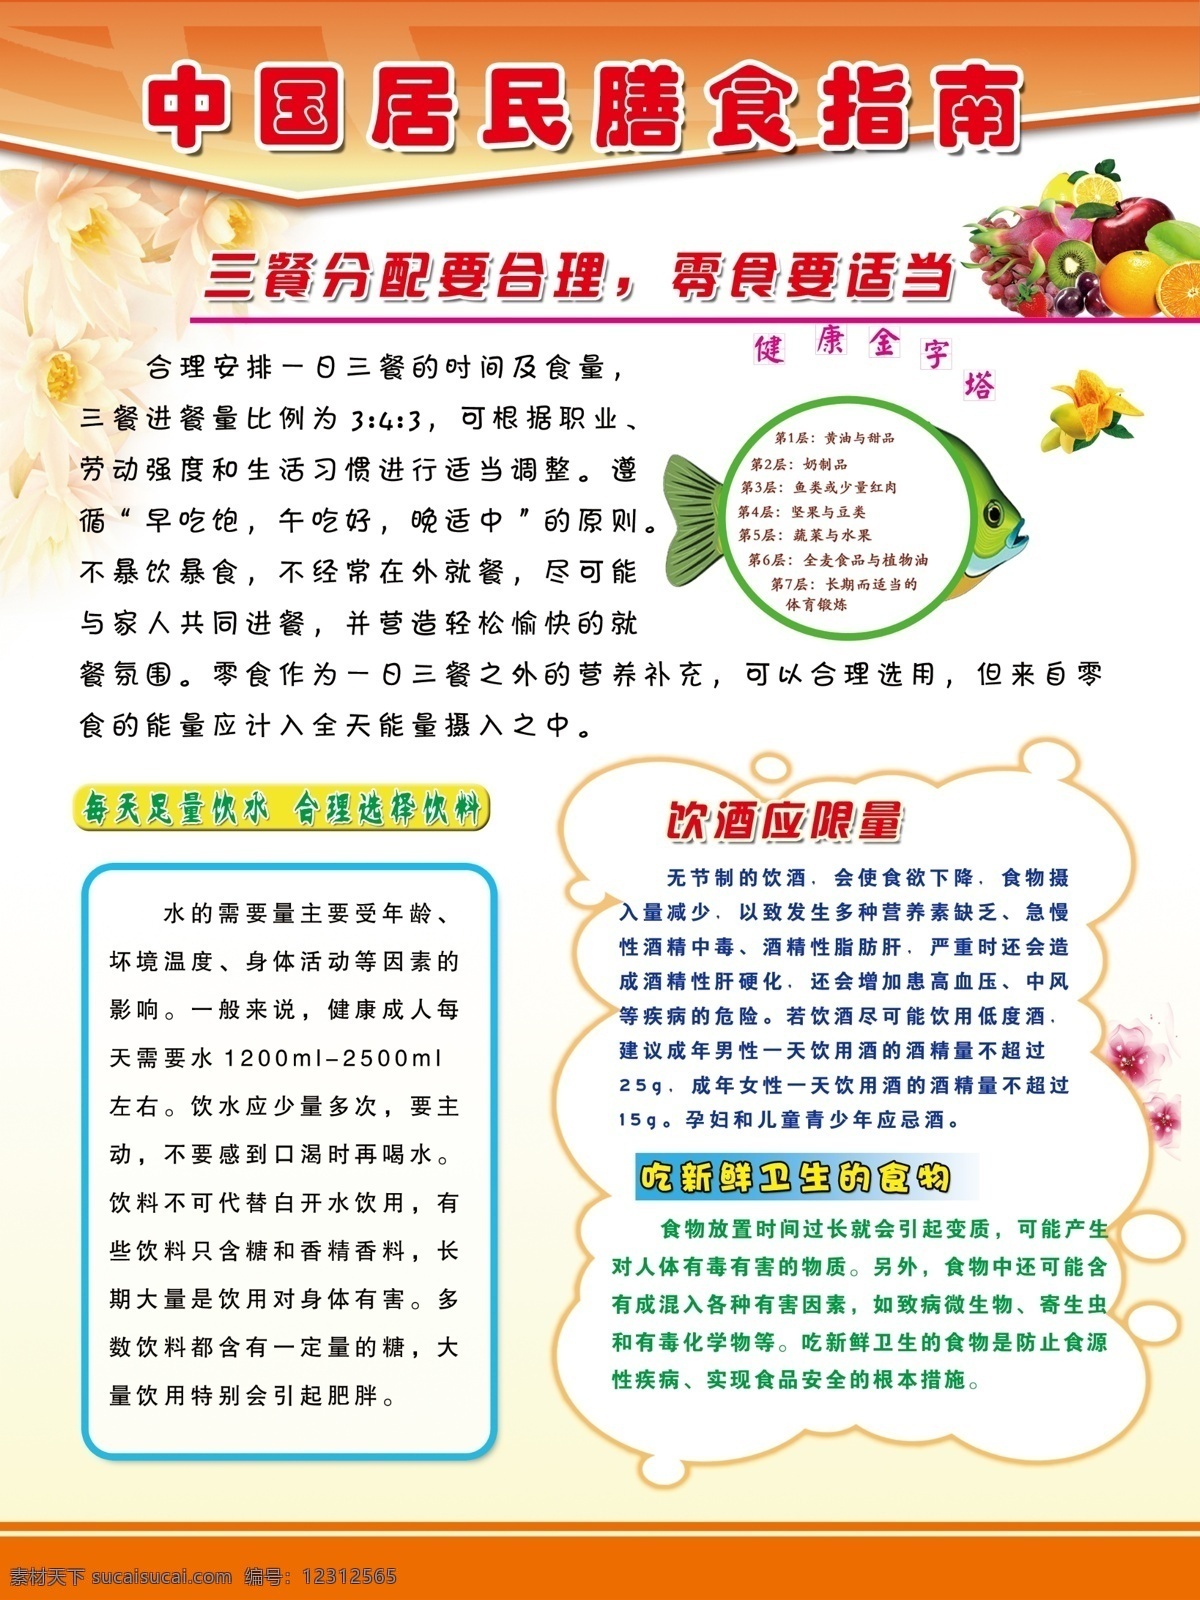 中国 居民 膳食 指南 膳食指南 饮食健康 饮食文化 白色